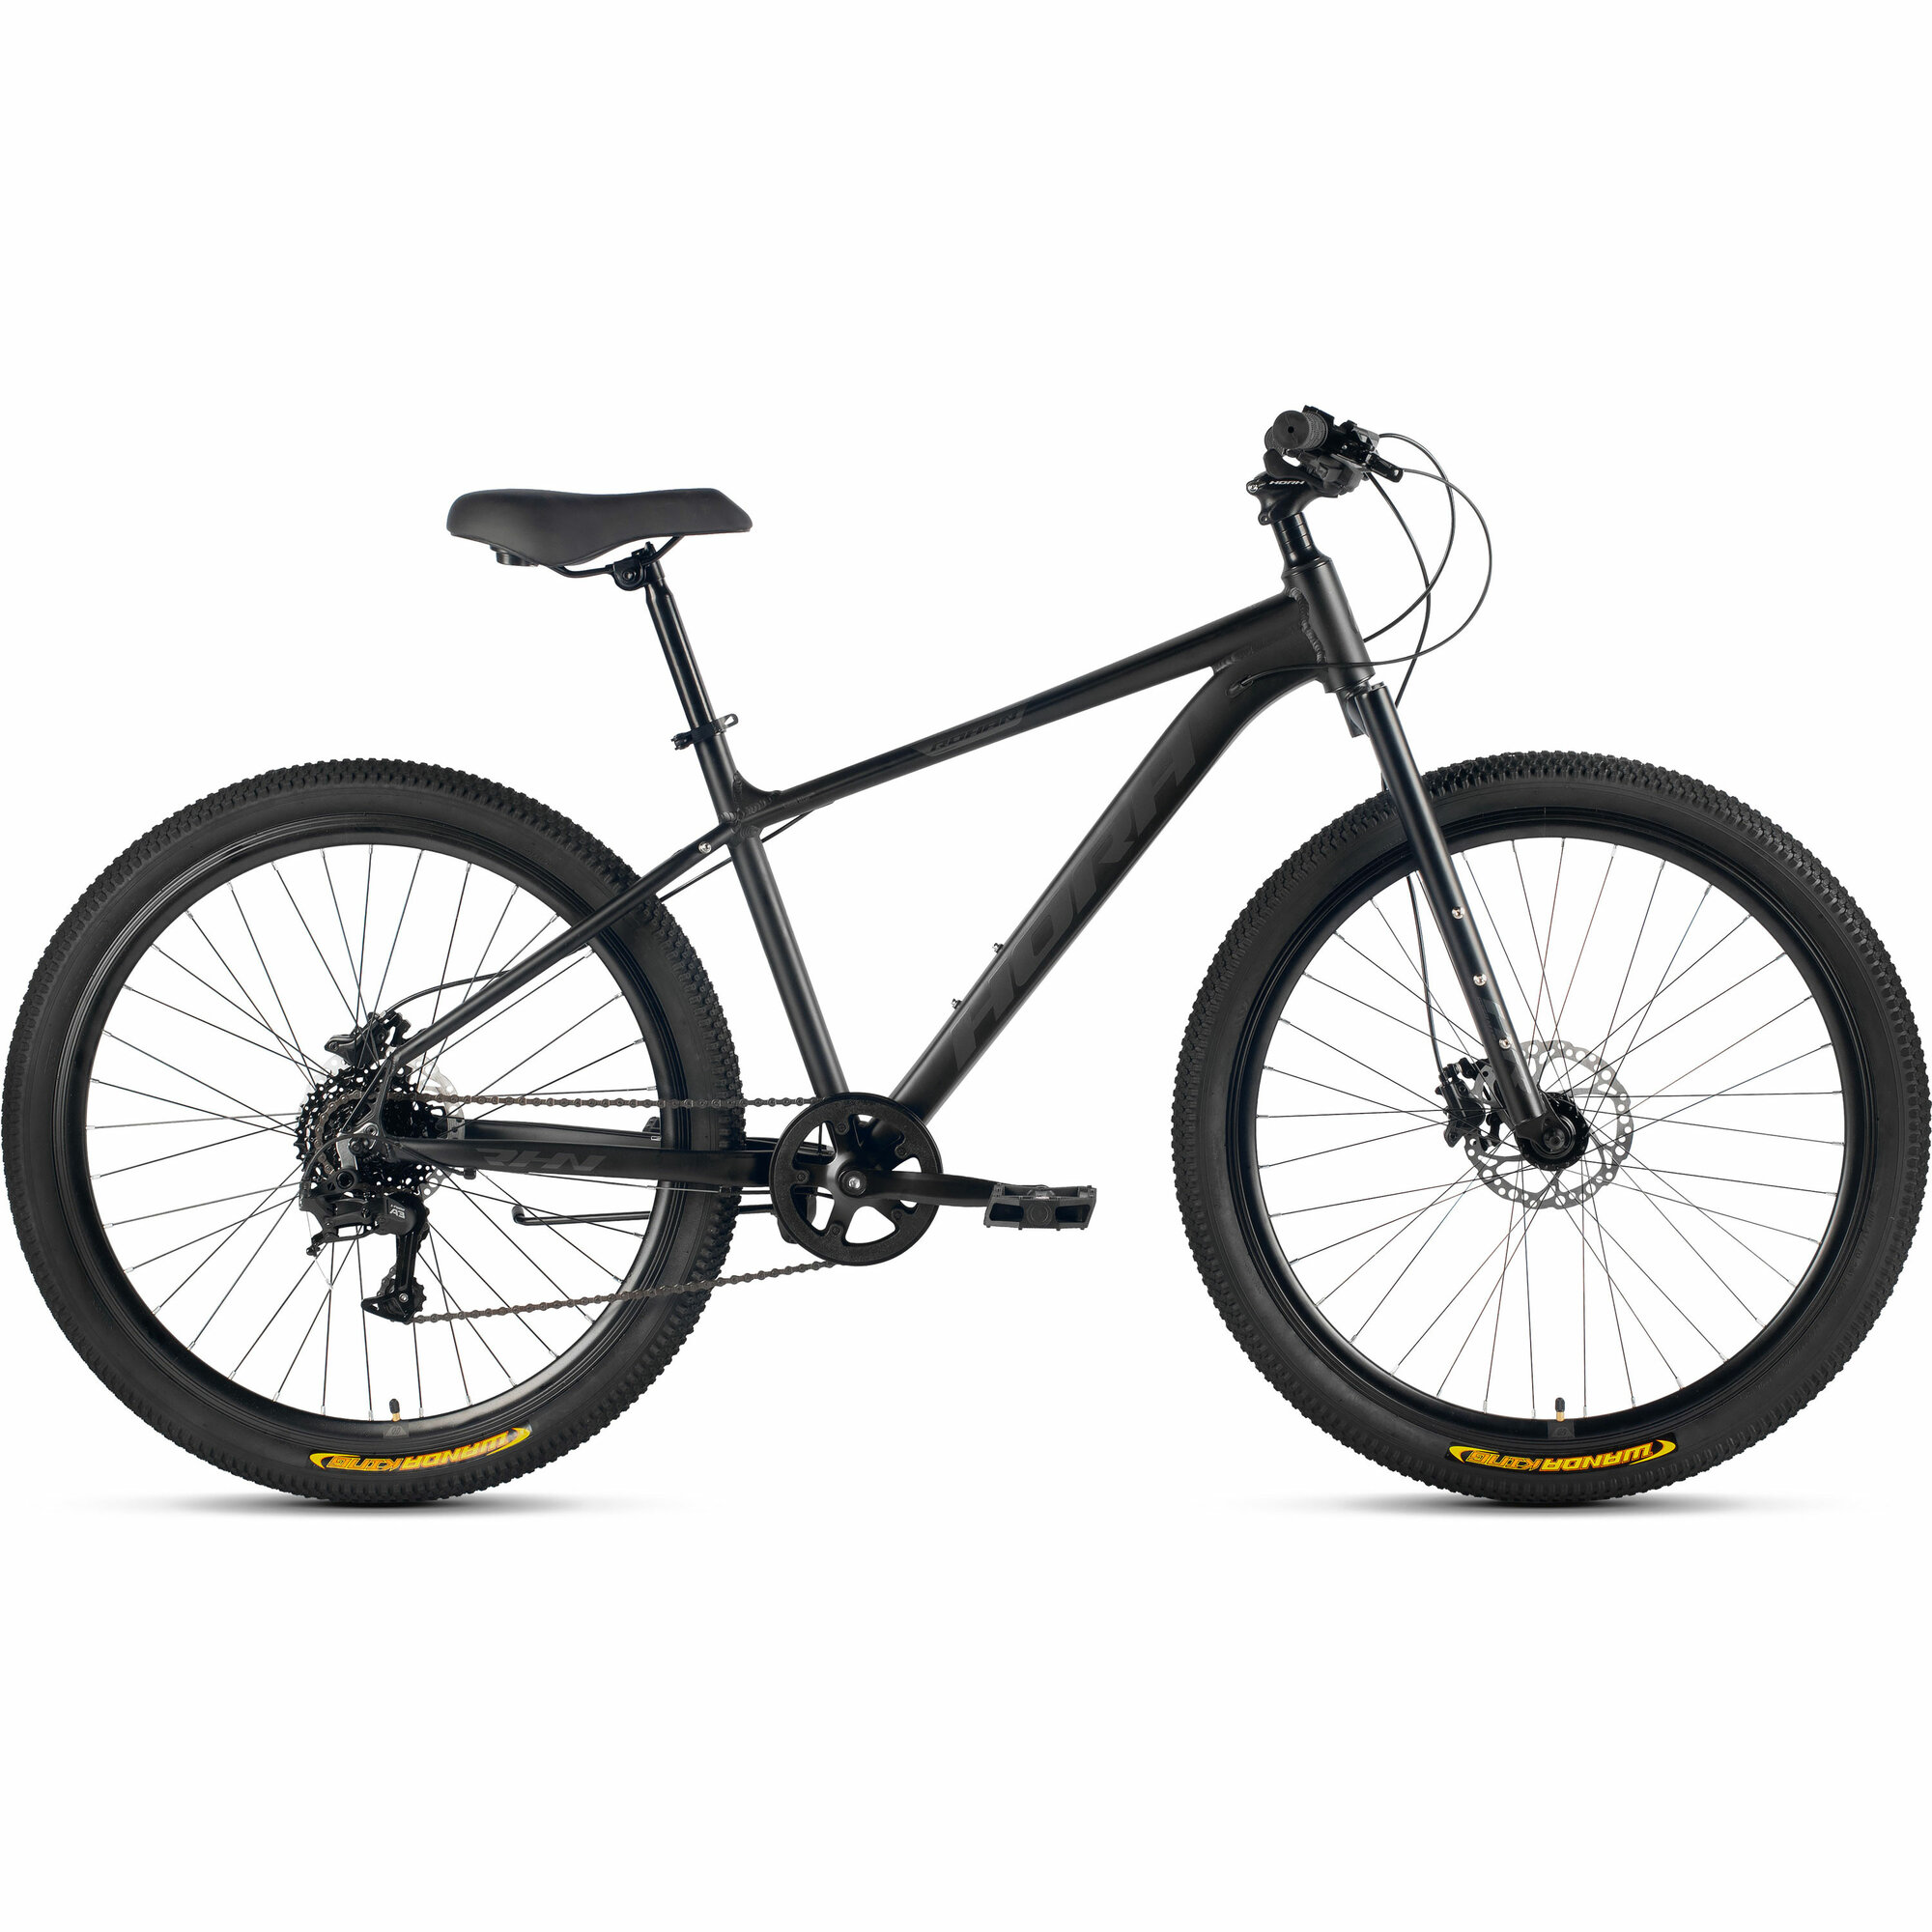 Велосипед горный HORH ROHAN RHD 7.1R 27.5" (2024), ригид, взрослый, мужской, алюминиевая рама, 8 скоростей, дисковые гидравлические тормоза, цвет Black-Grey, черный/серый цвет, размер рамы 17", для роста 170-180 см